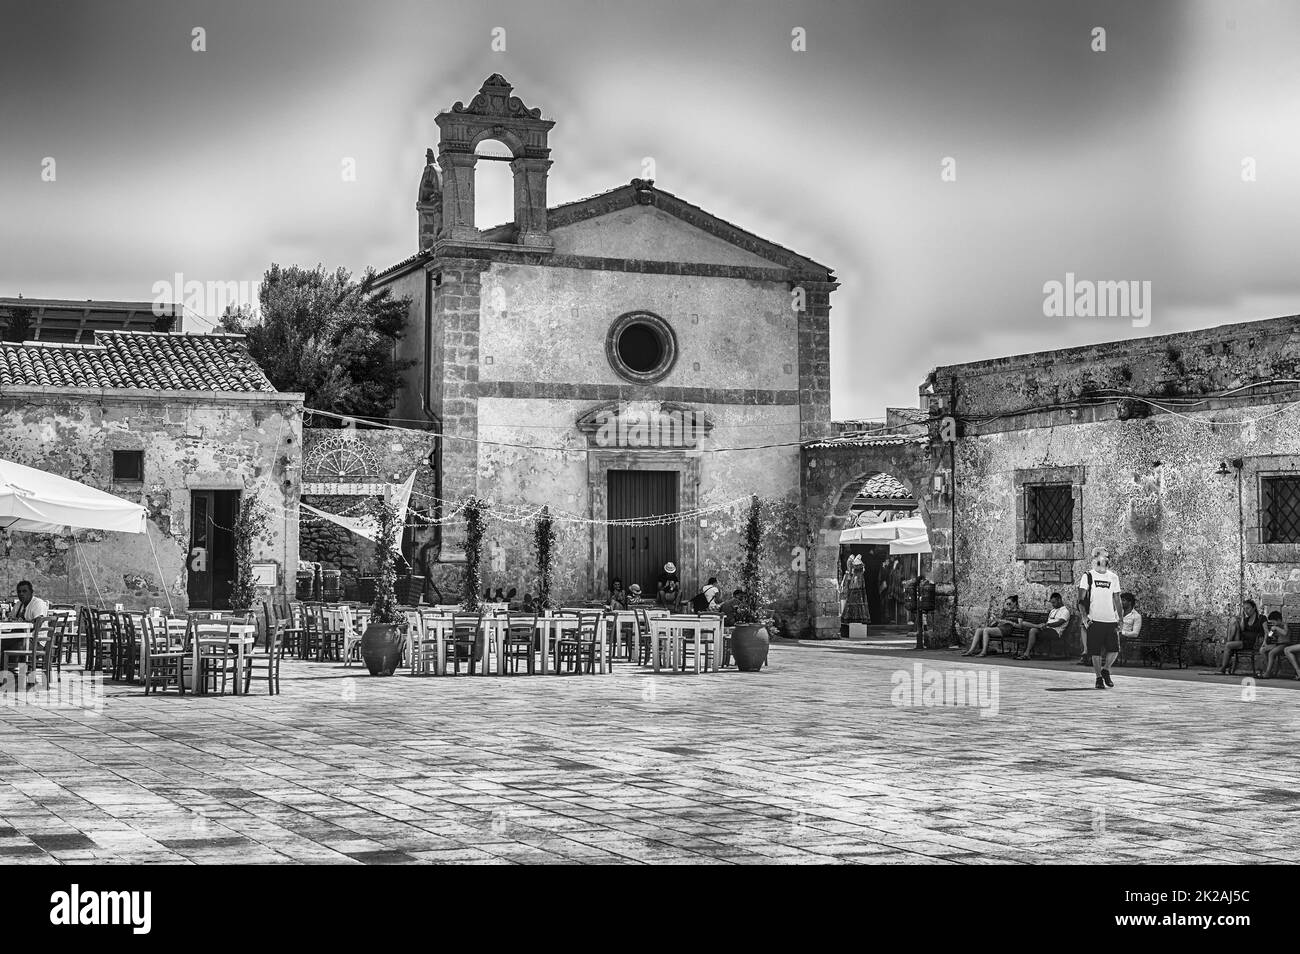 MARZAMEMI, ITALIE - 12 AOÛT 2021 : la place centrale principale de Marzamemi, village de pêcheurs pittoresque dans la province de Syracuse, Italie Banque D'Images